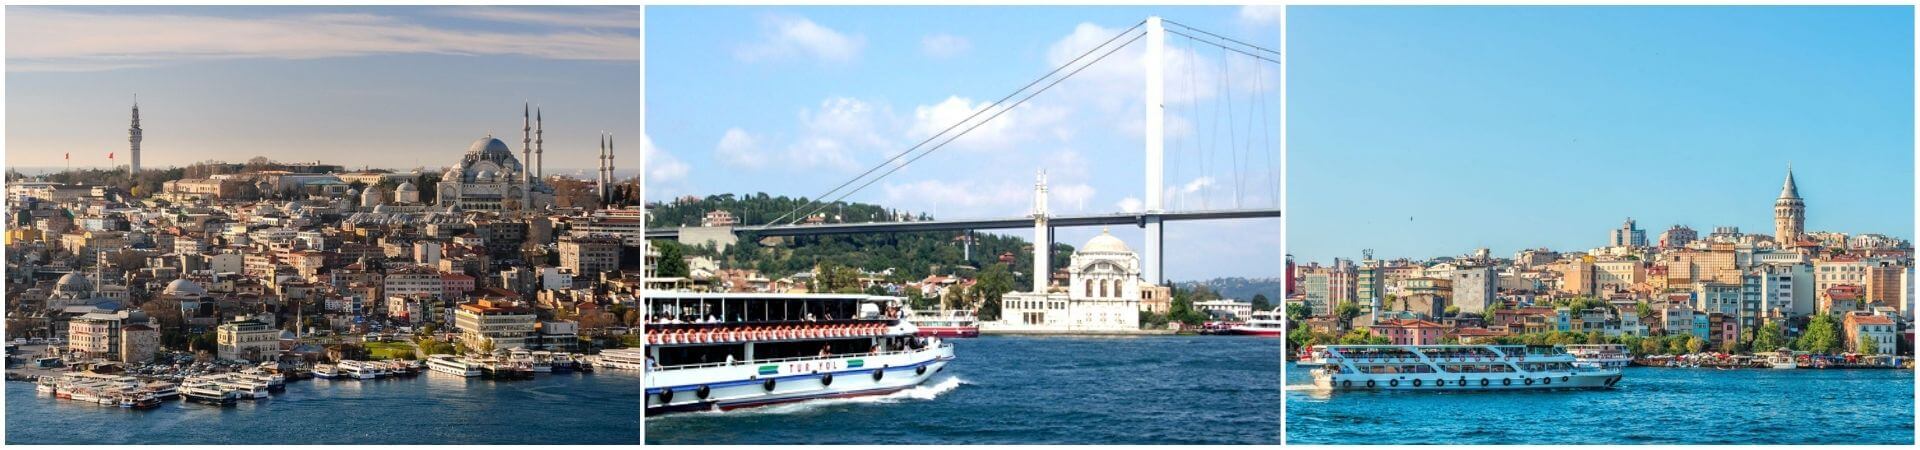 Croisière sur le Bosphore à Istanbul